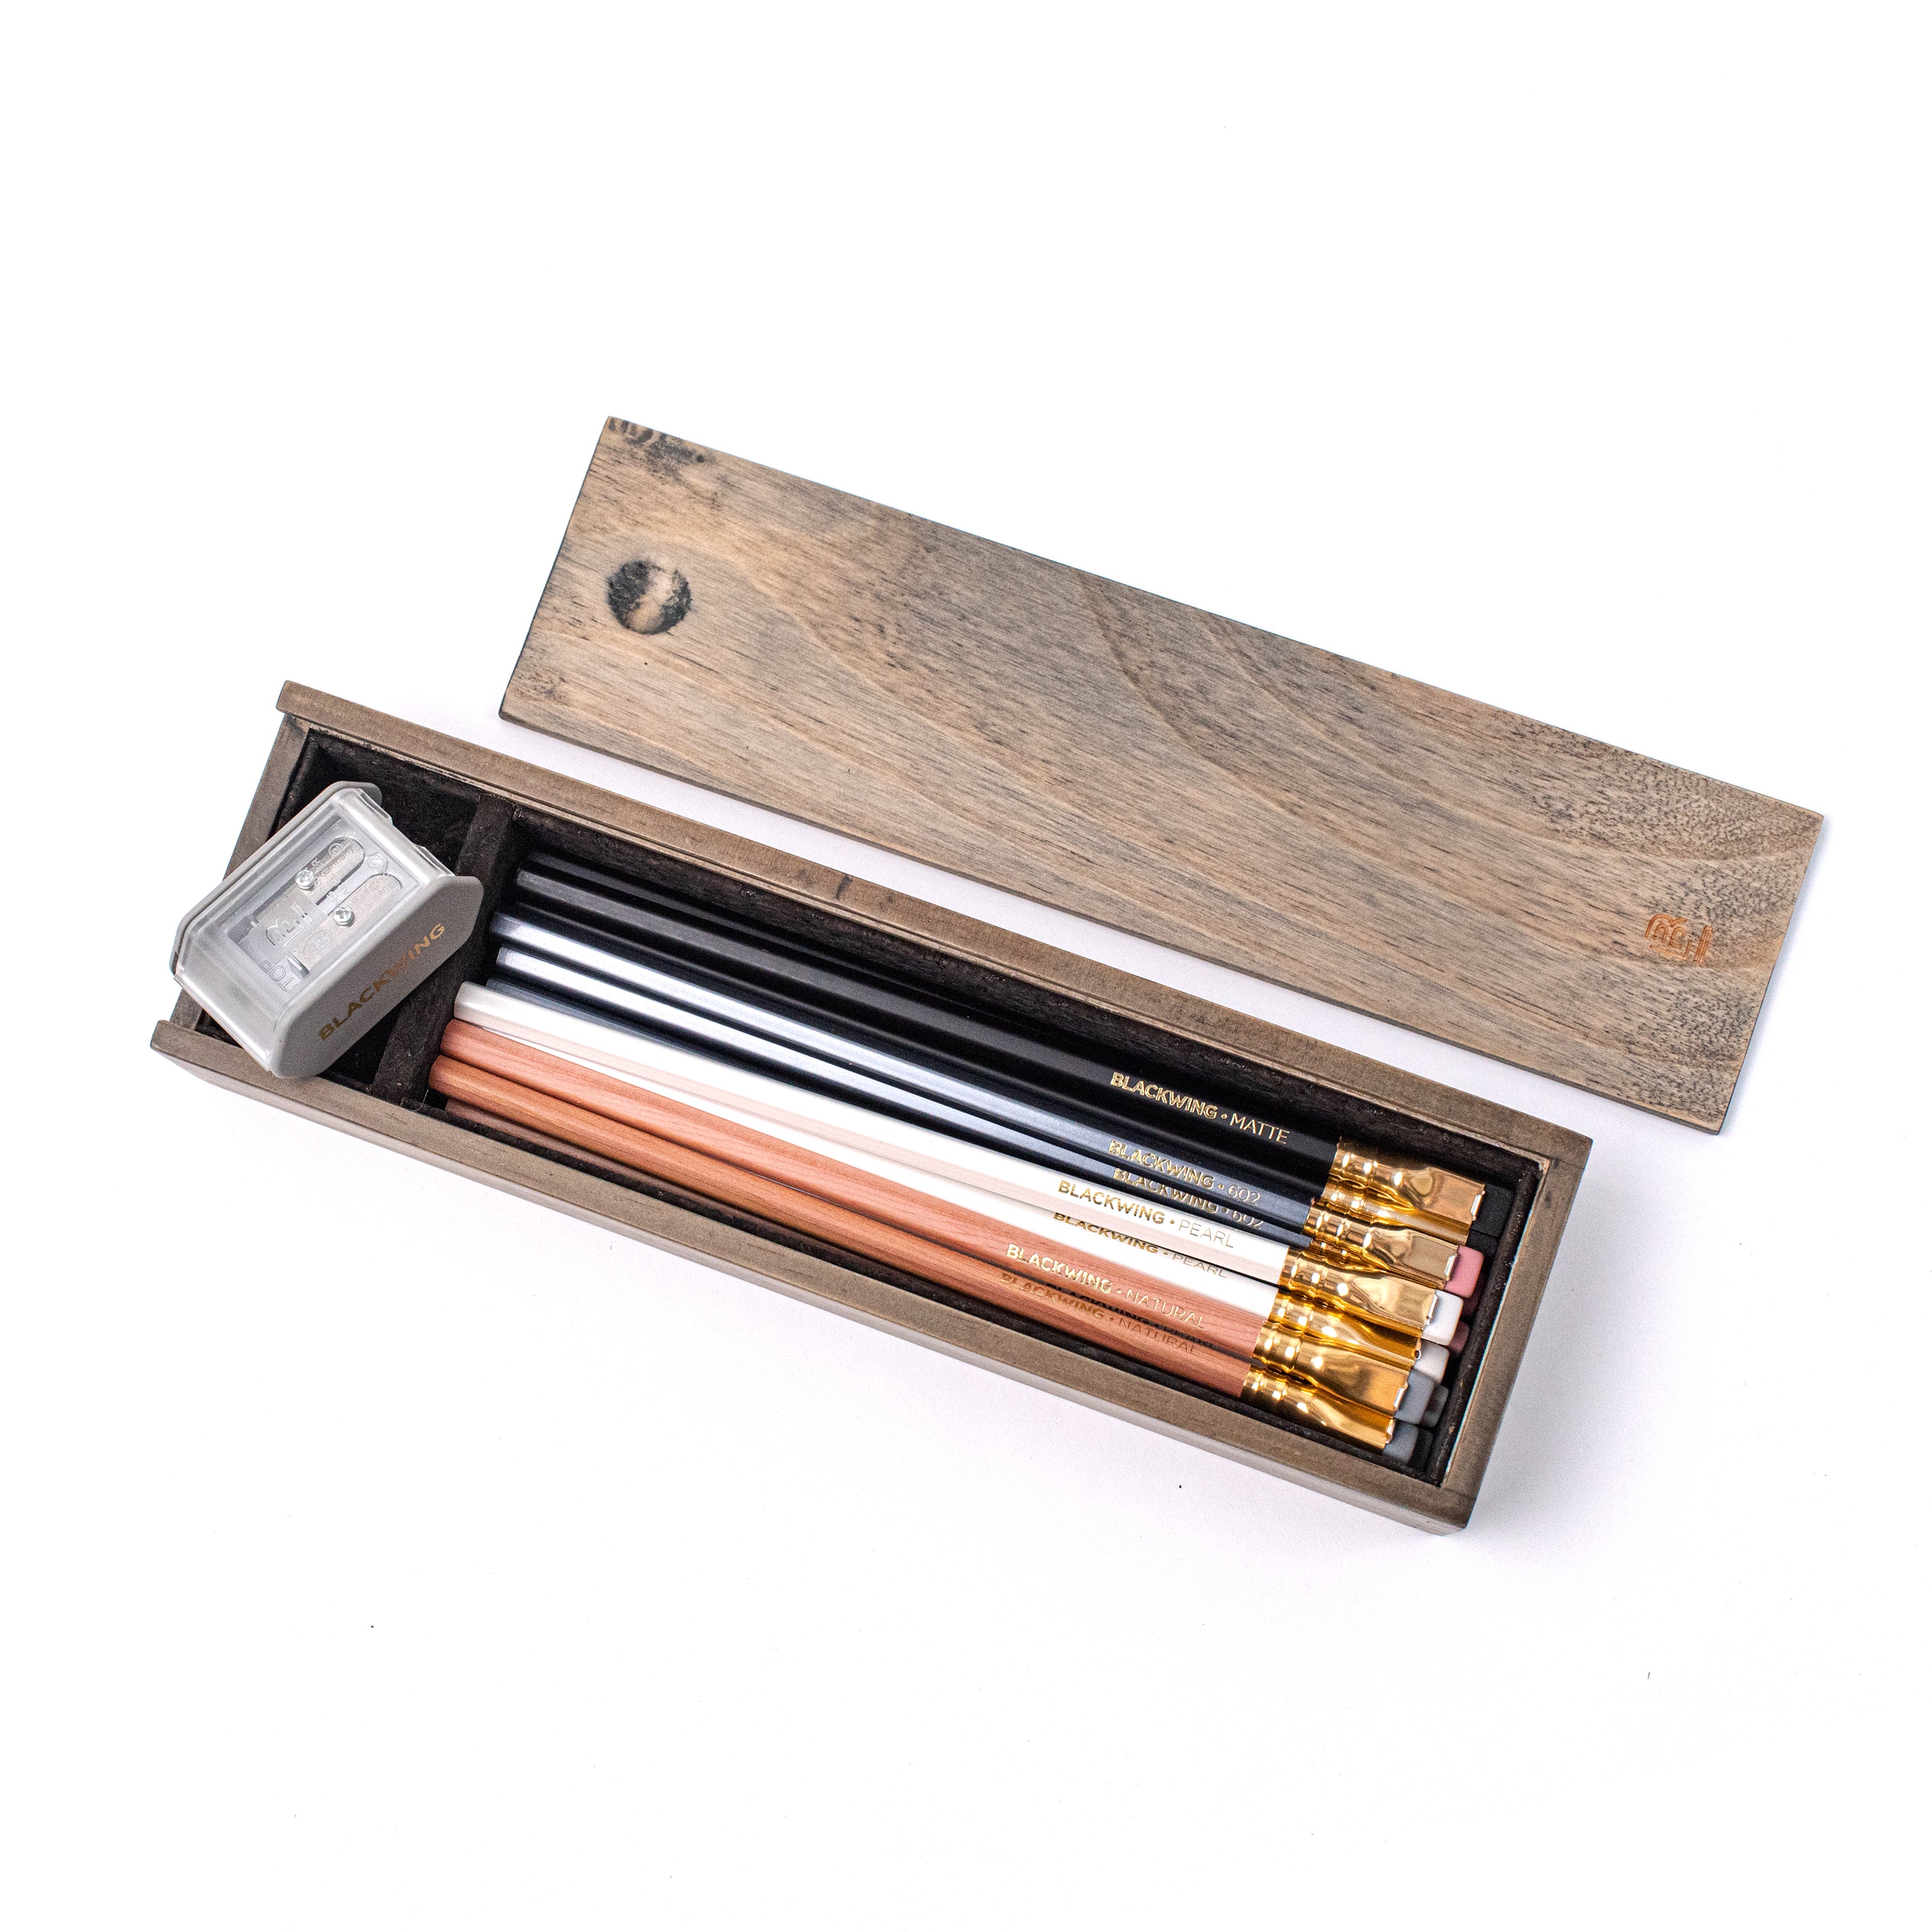 A set of Blackwing Rustic Box pencils.